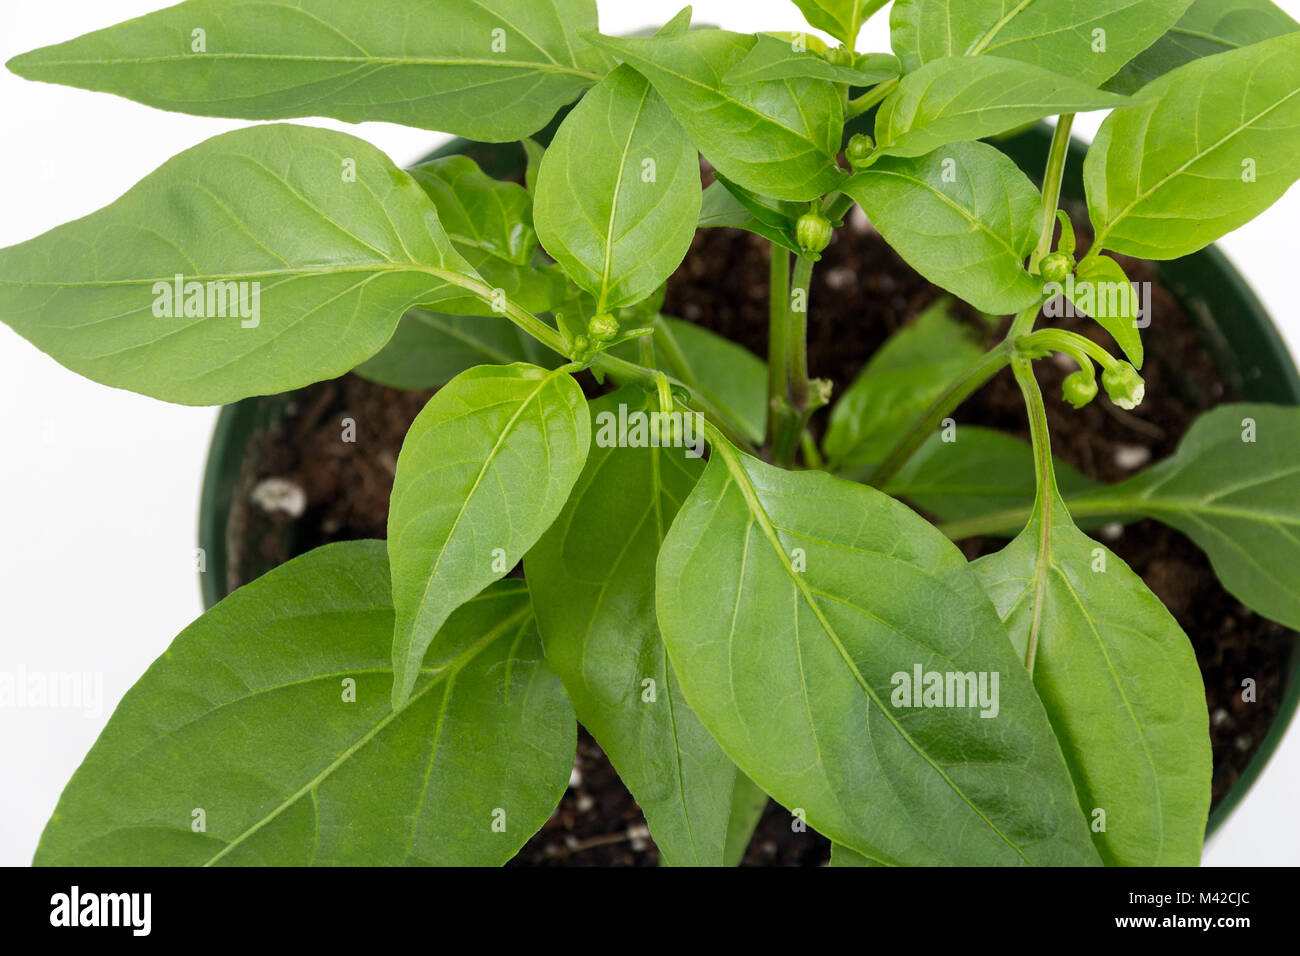 Thai piment plante en pot à fleurs isolées sur fond blanc Banque D'Images